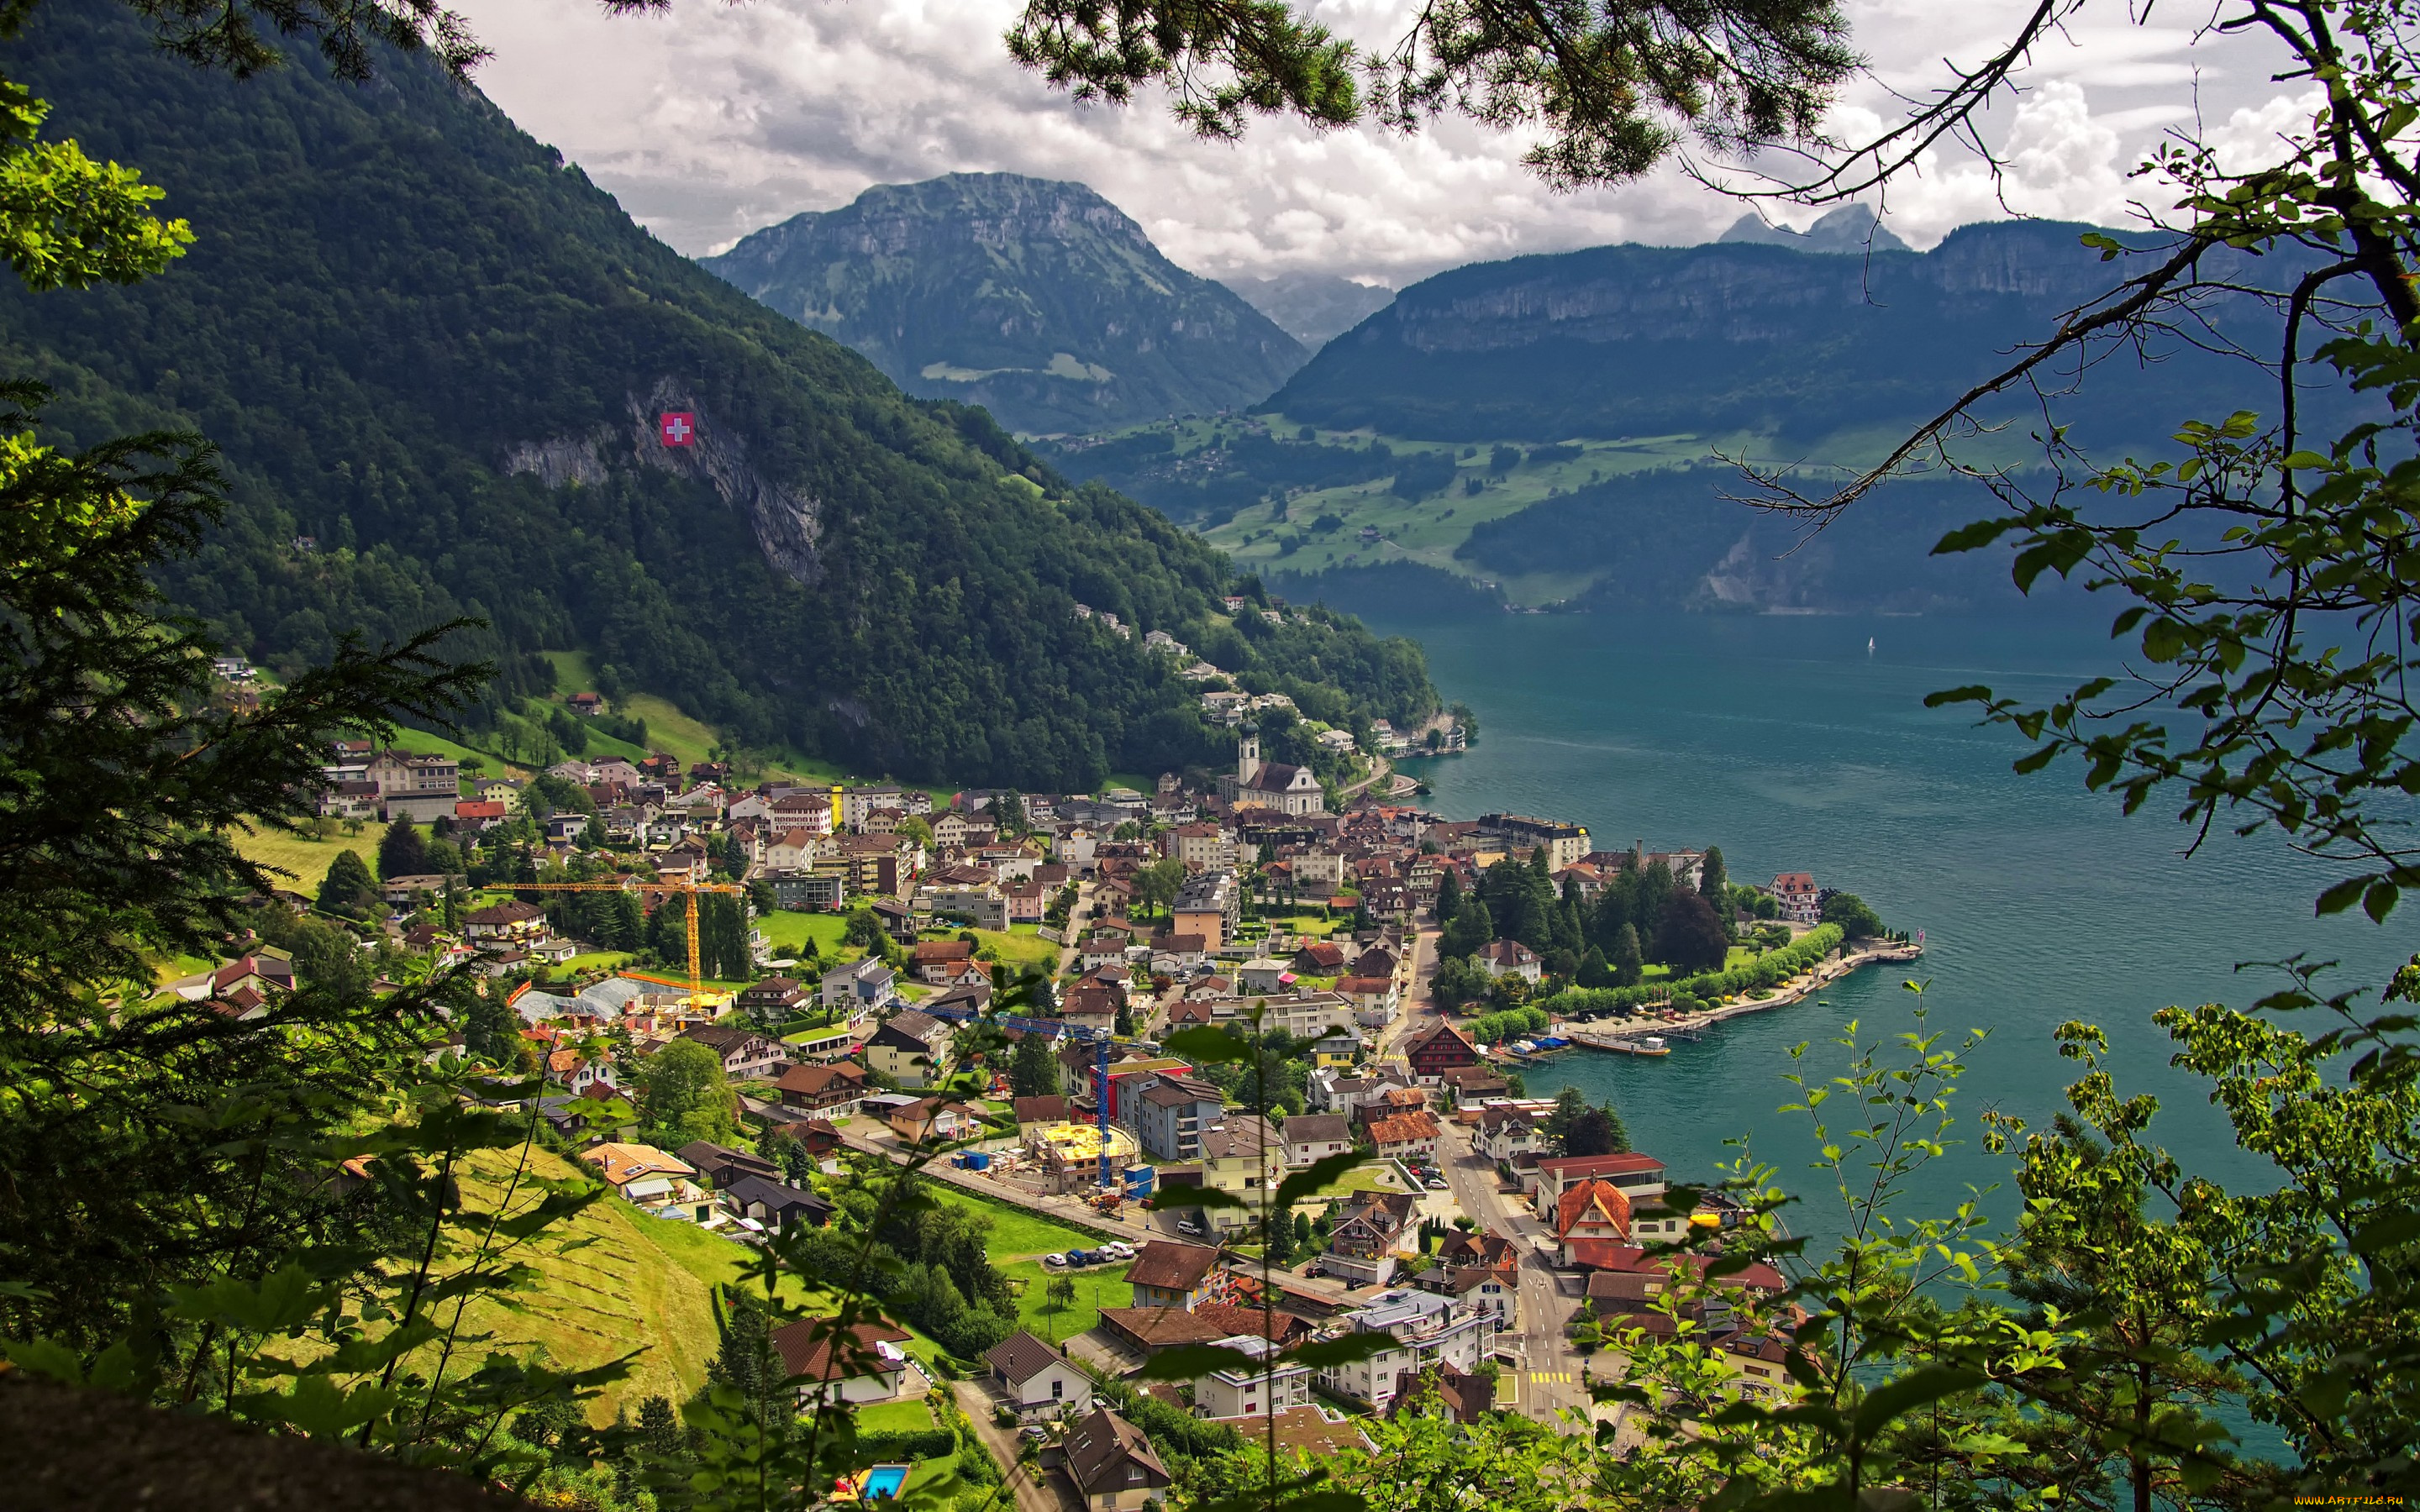 города, -, пейзажи, lake, lucerne, gersau, панорама, швейцария, поля, леса, озеро, горы